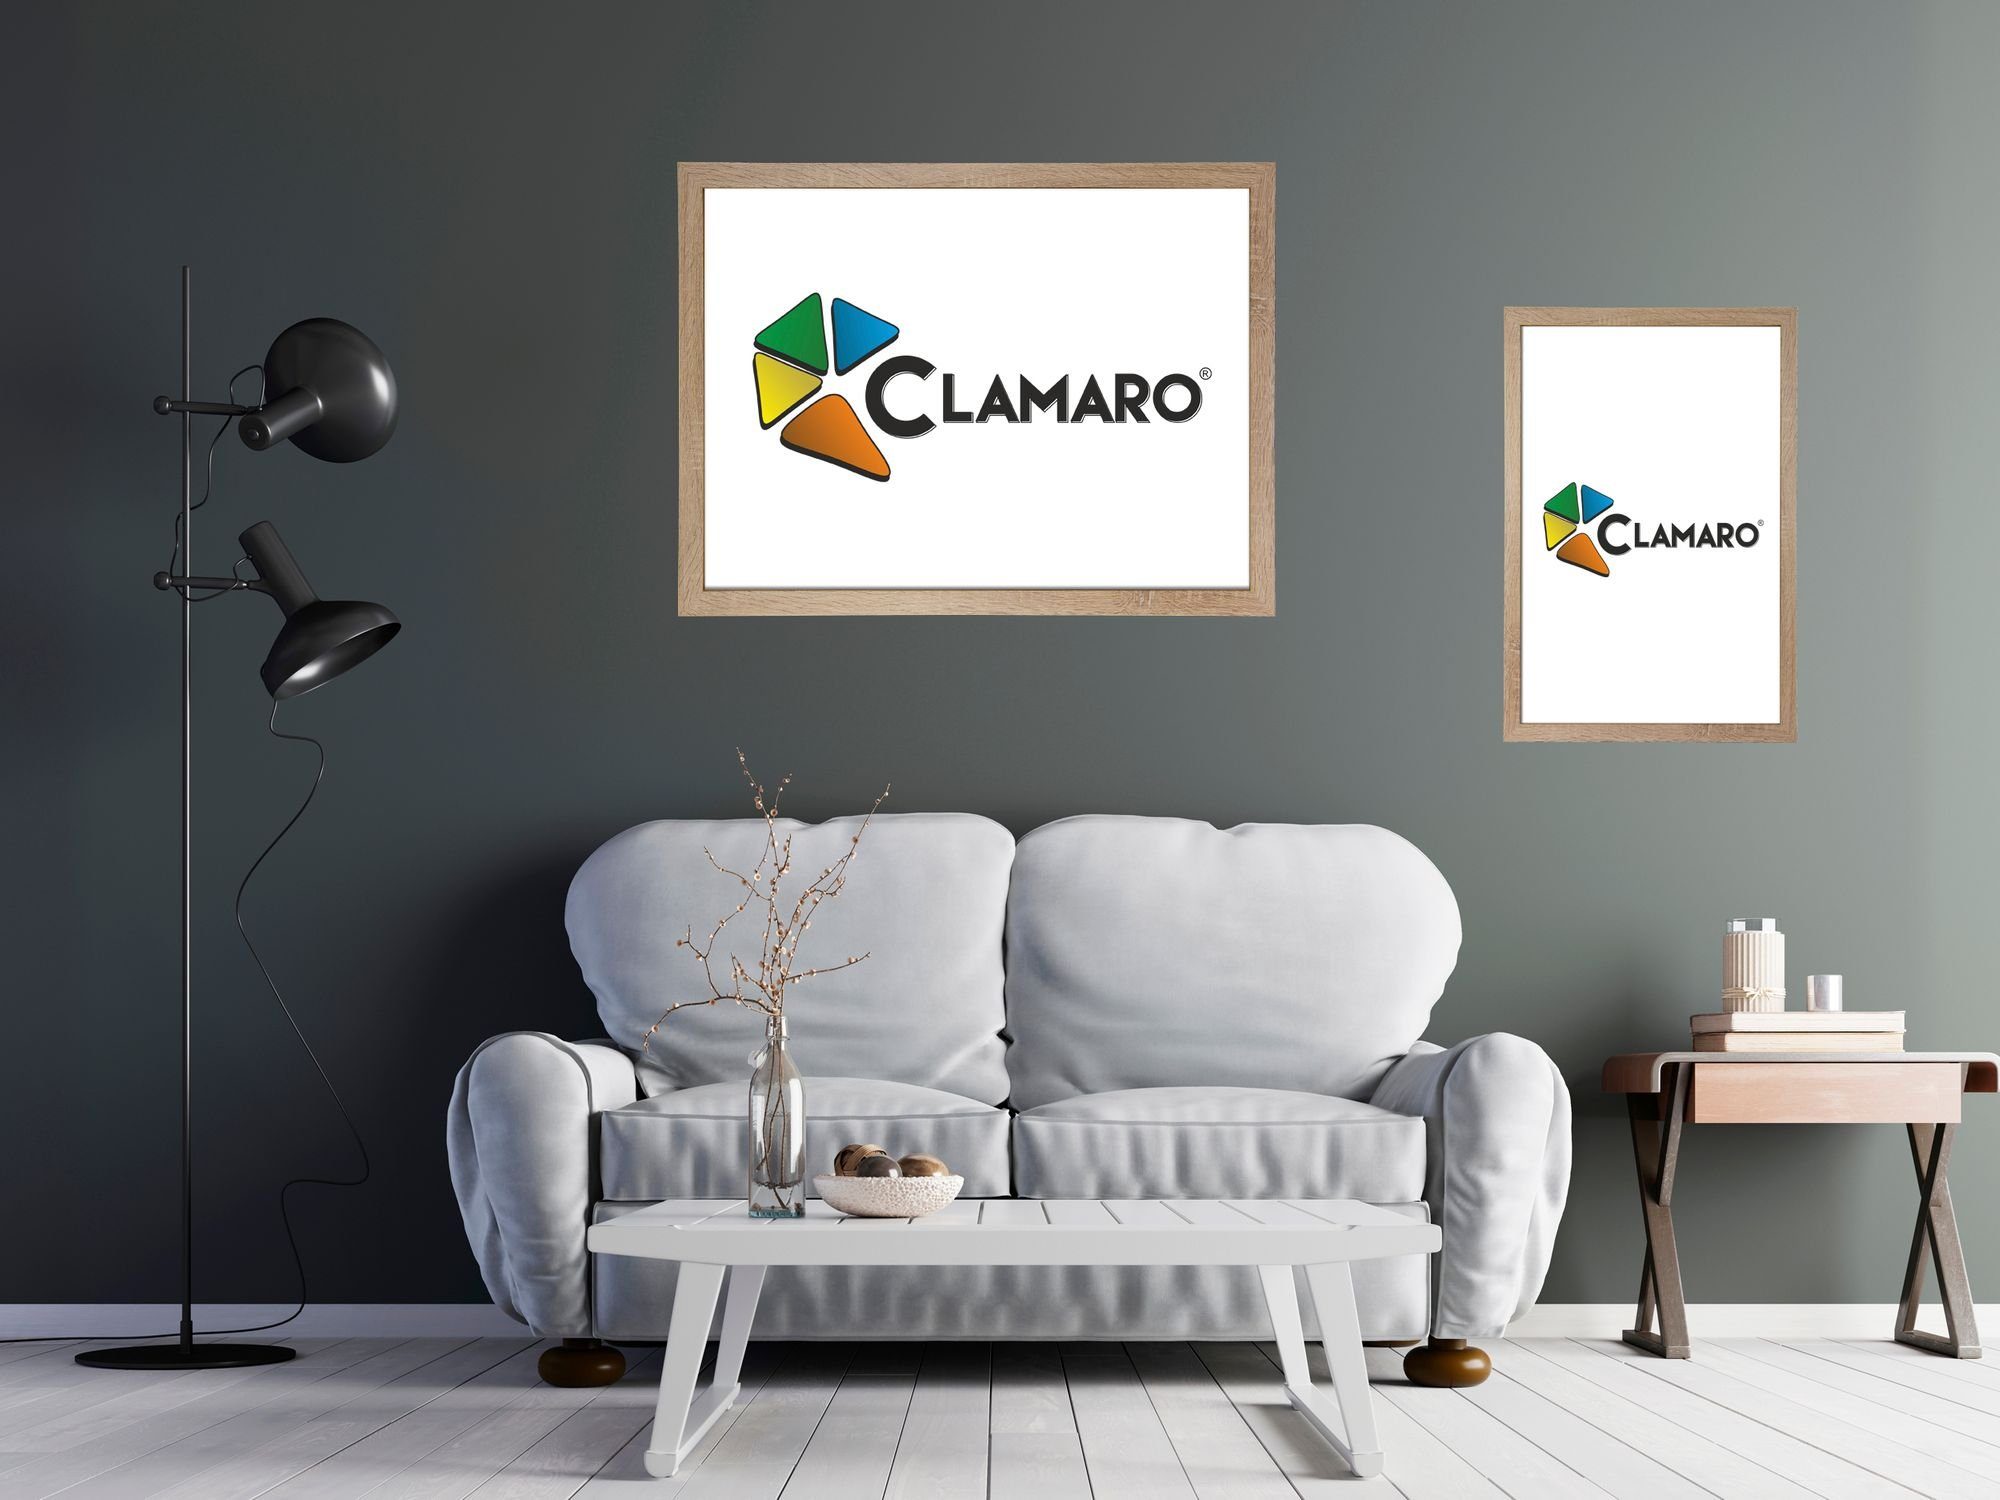 'Collage' Rückwand FSC® in Clamaro 30x45 Bilderrahmen nach Aufhänger Holz und CLAMARO inkl. Moderner sonama Rahmen handgefertigt eckiger Maß Acrylglas, eiche MDF Bilderrahmen